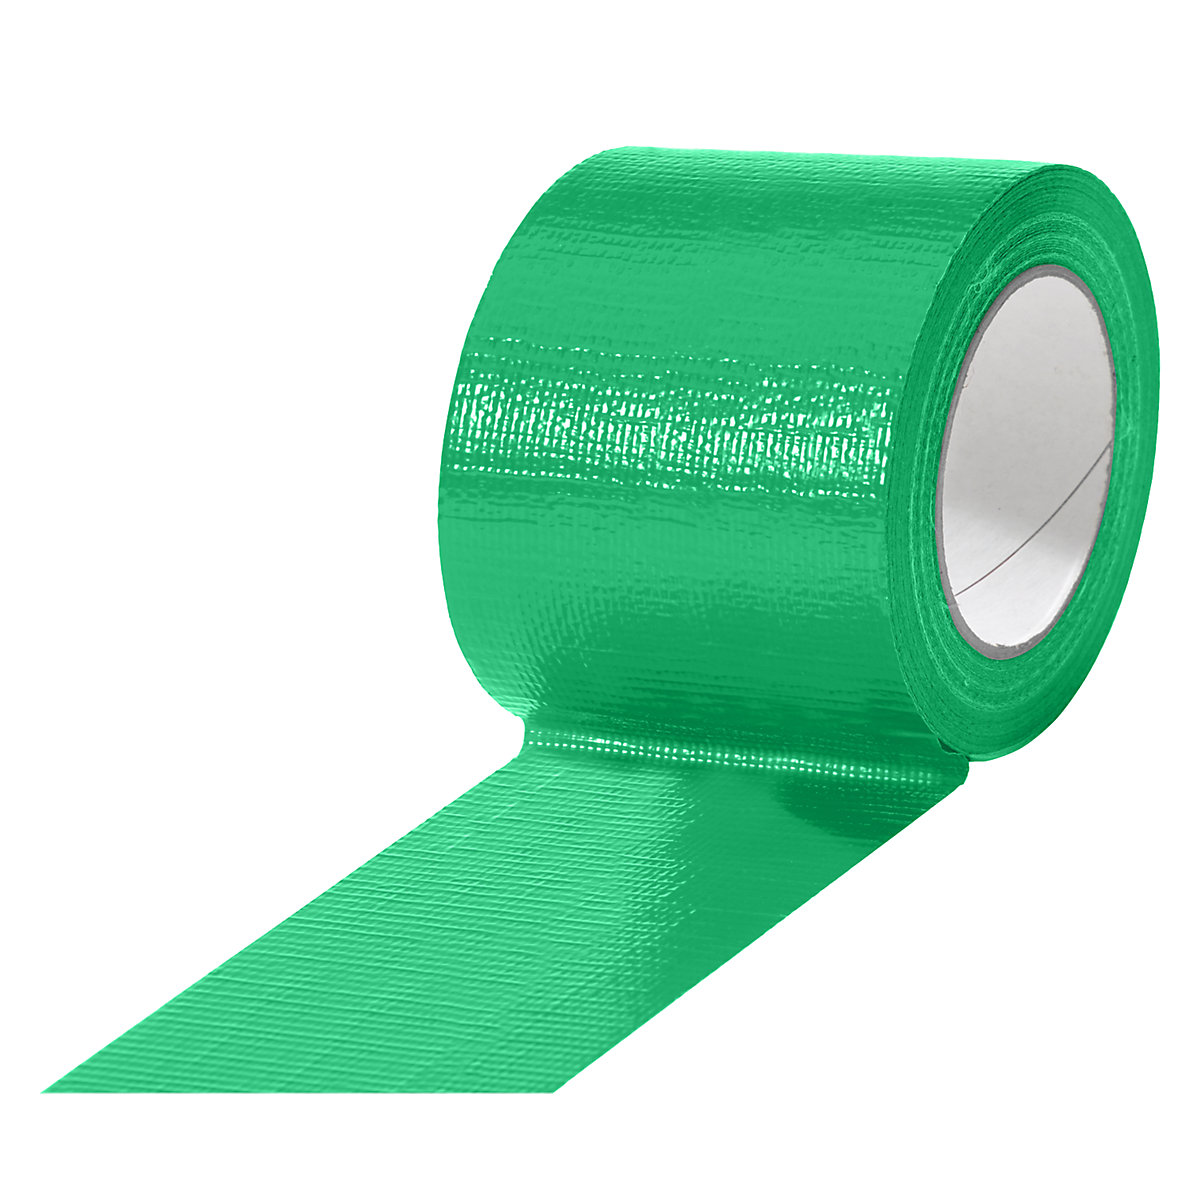 Cinta de tejido, en diferentes colores, UE 12 rollos, verde, anchura de cinta 75 mm-16